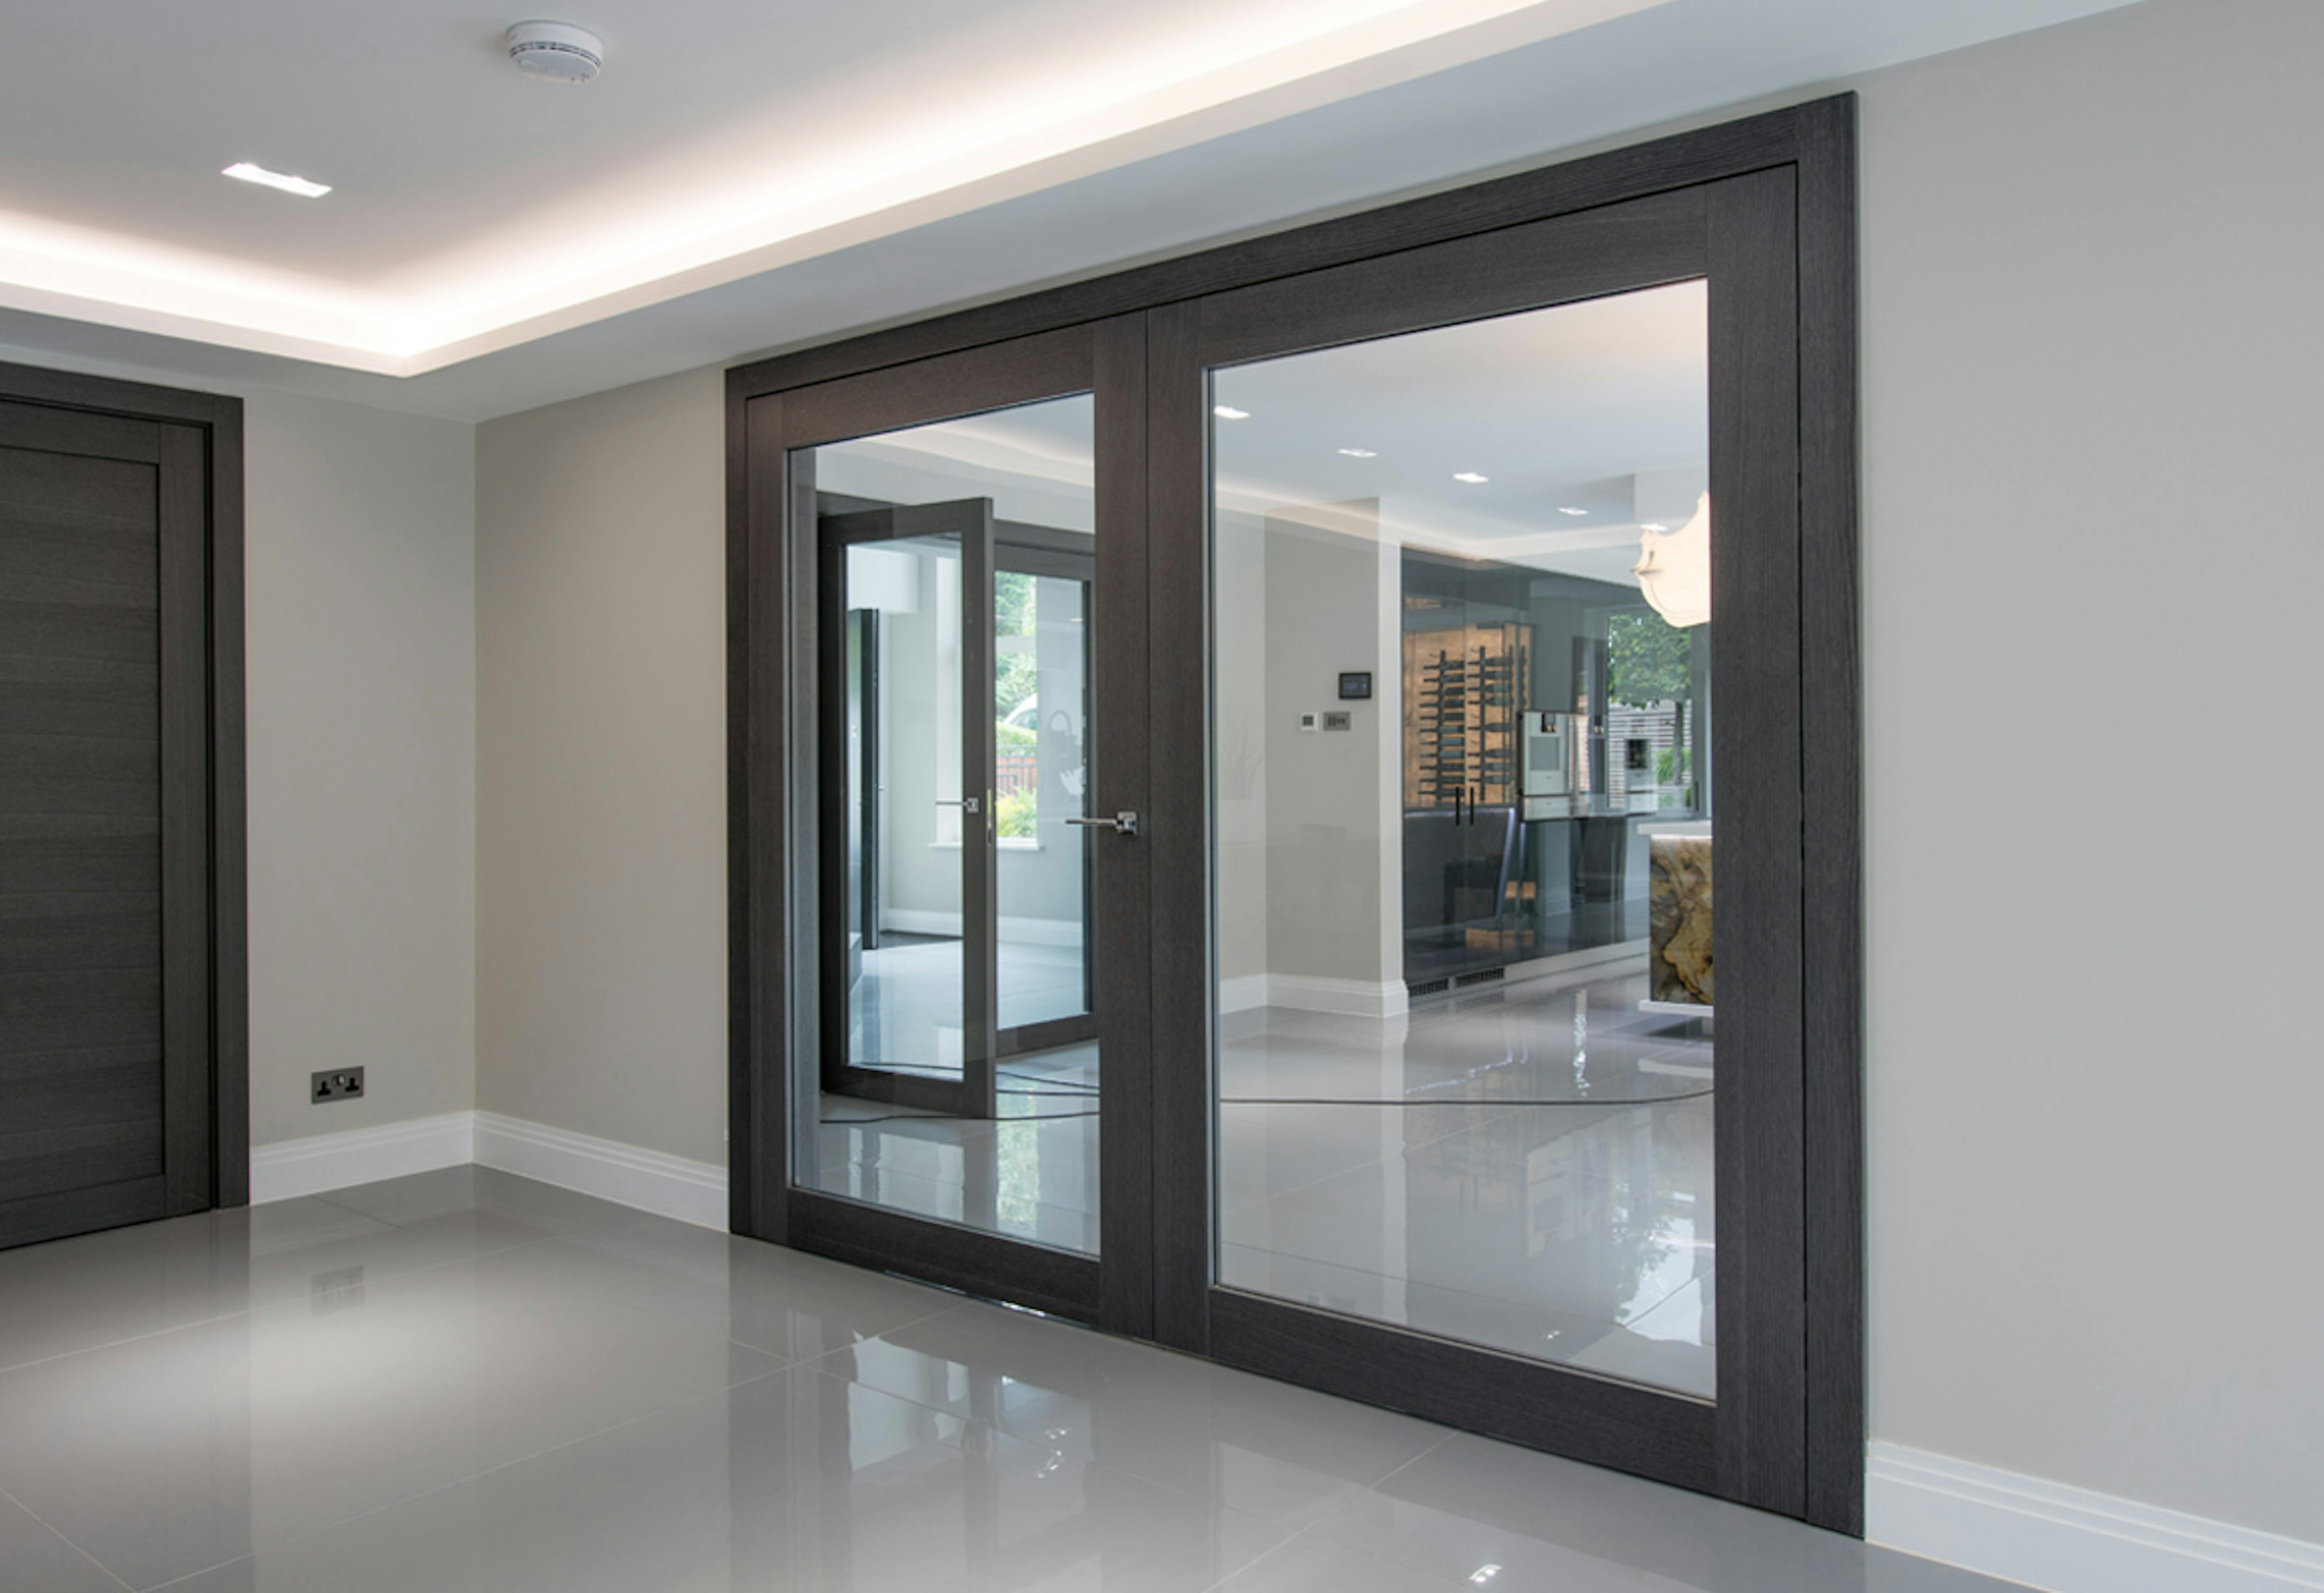 Deuren internal doors with glass panels